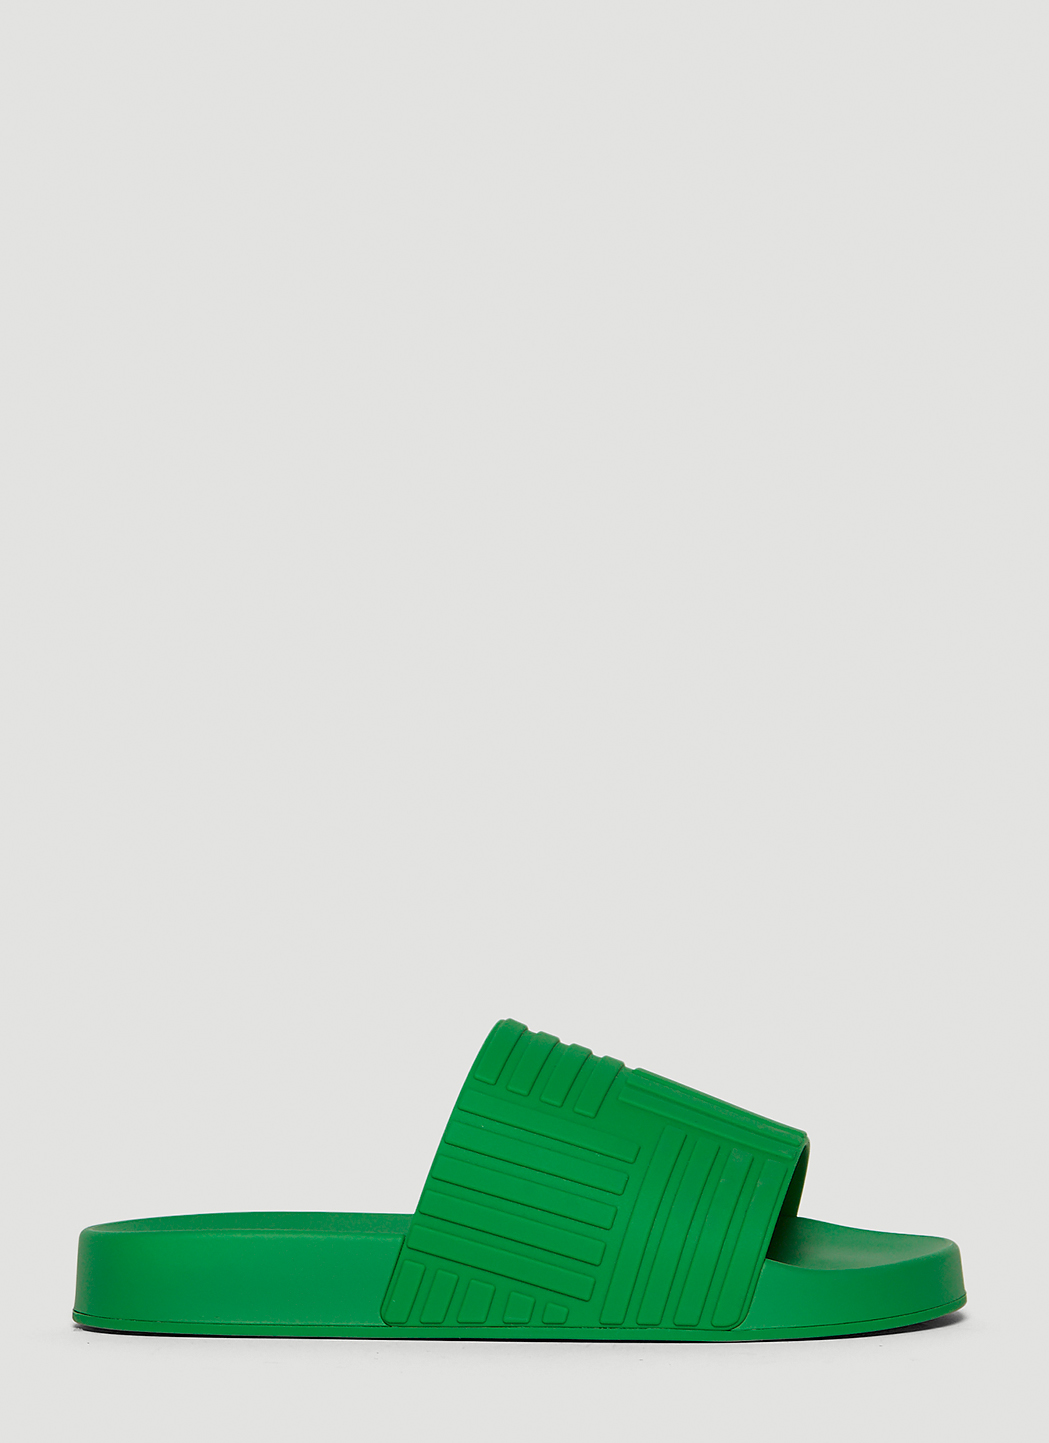 Bottega Veneta Embossed Rubber Slides in Green | LN-CC